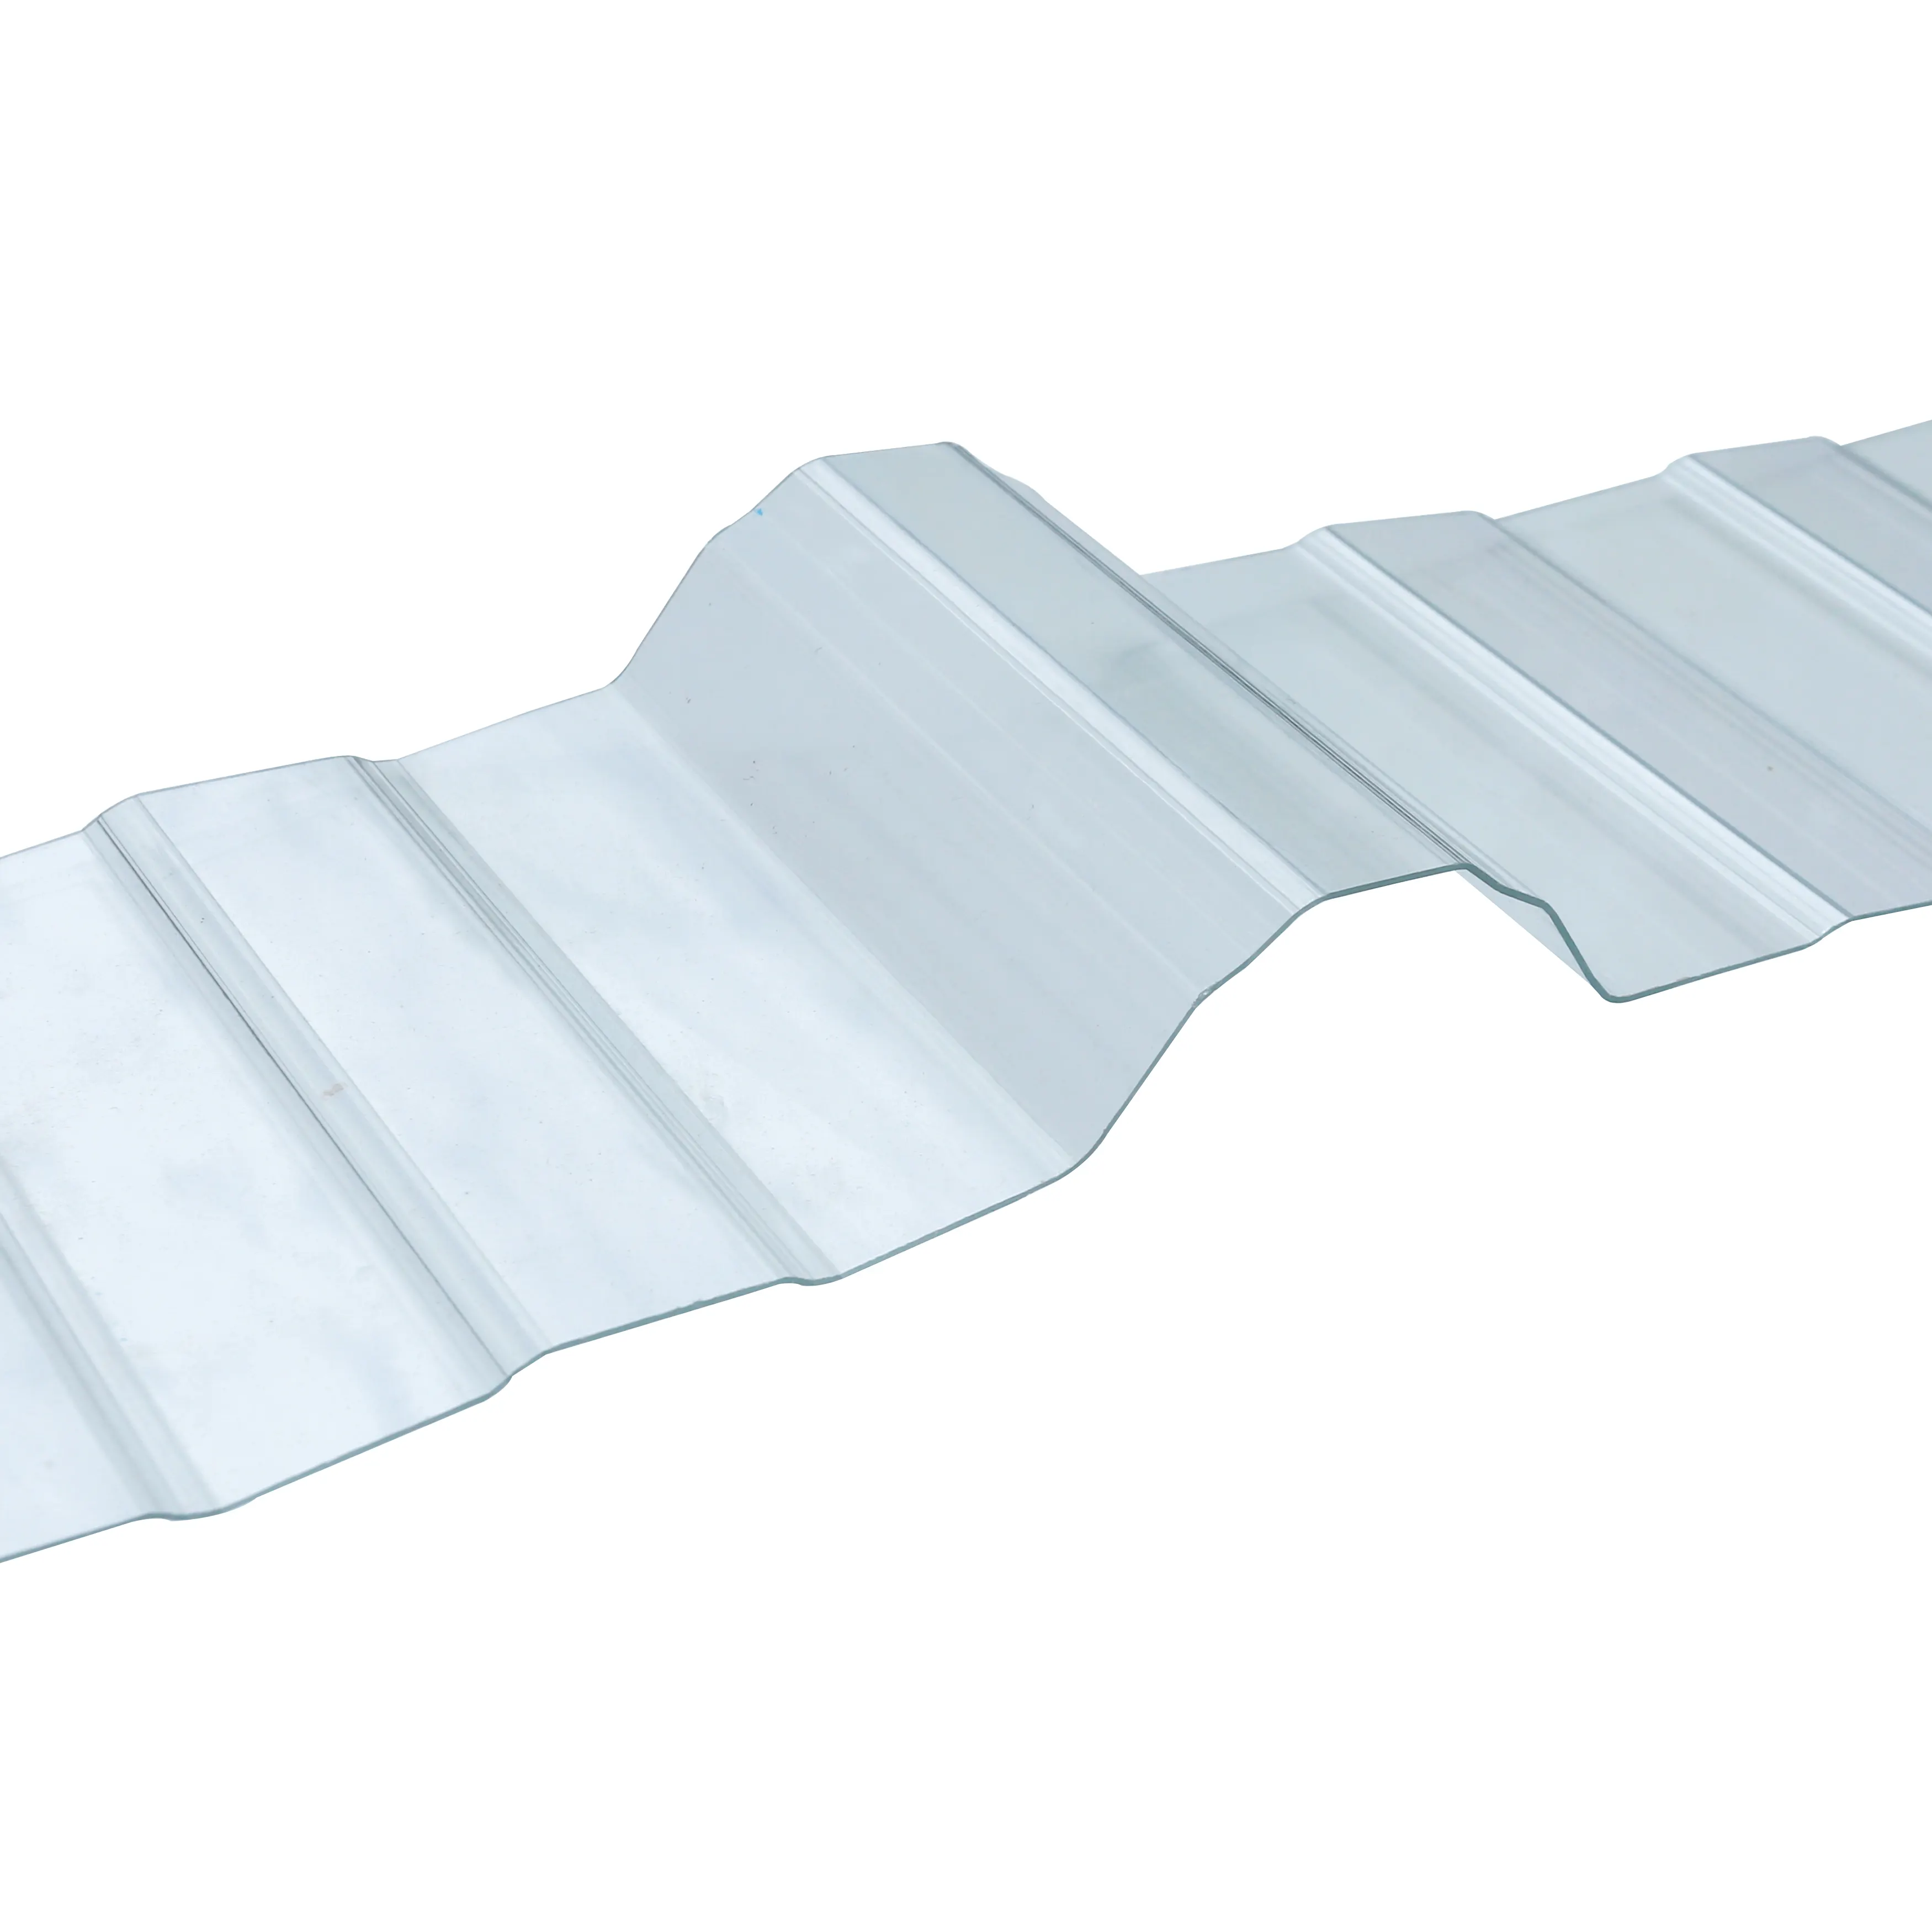 A basso costo in pvc ondulato in plastica per tetti tegole pannello colorato trapezoidale a onda resistente alla corrosione anti-industriale